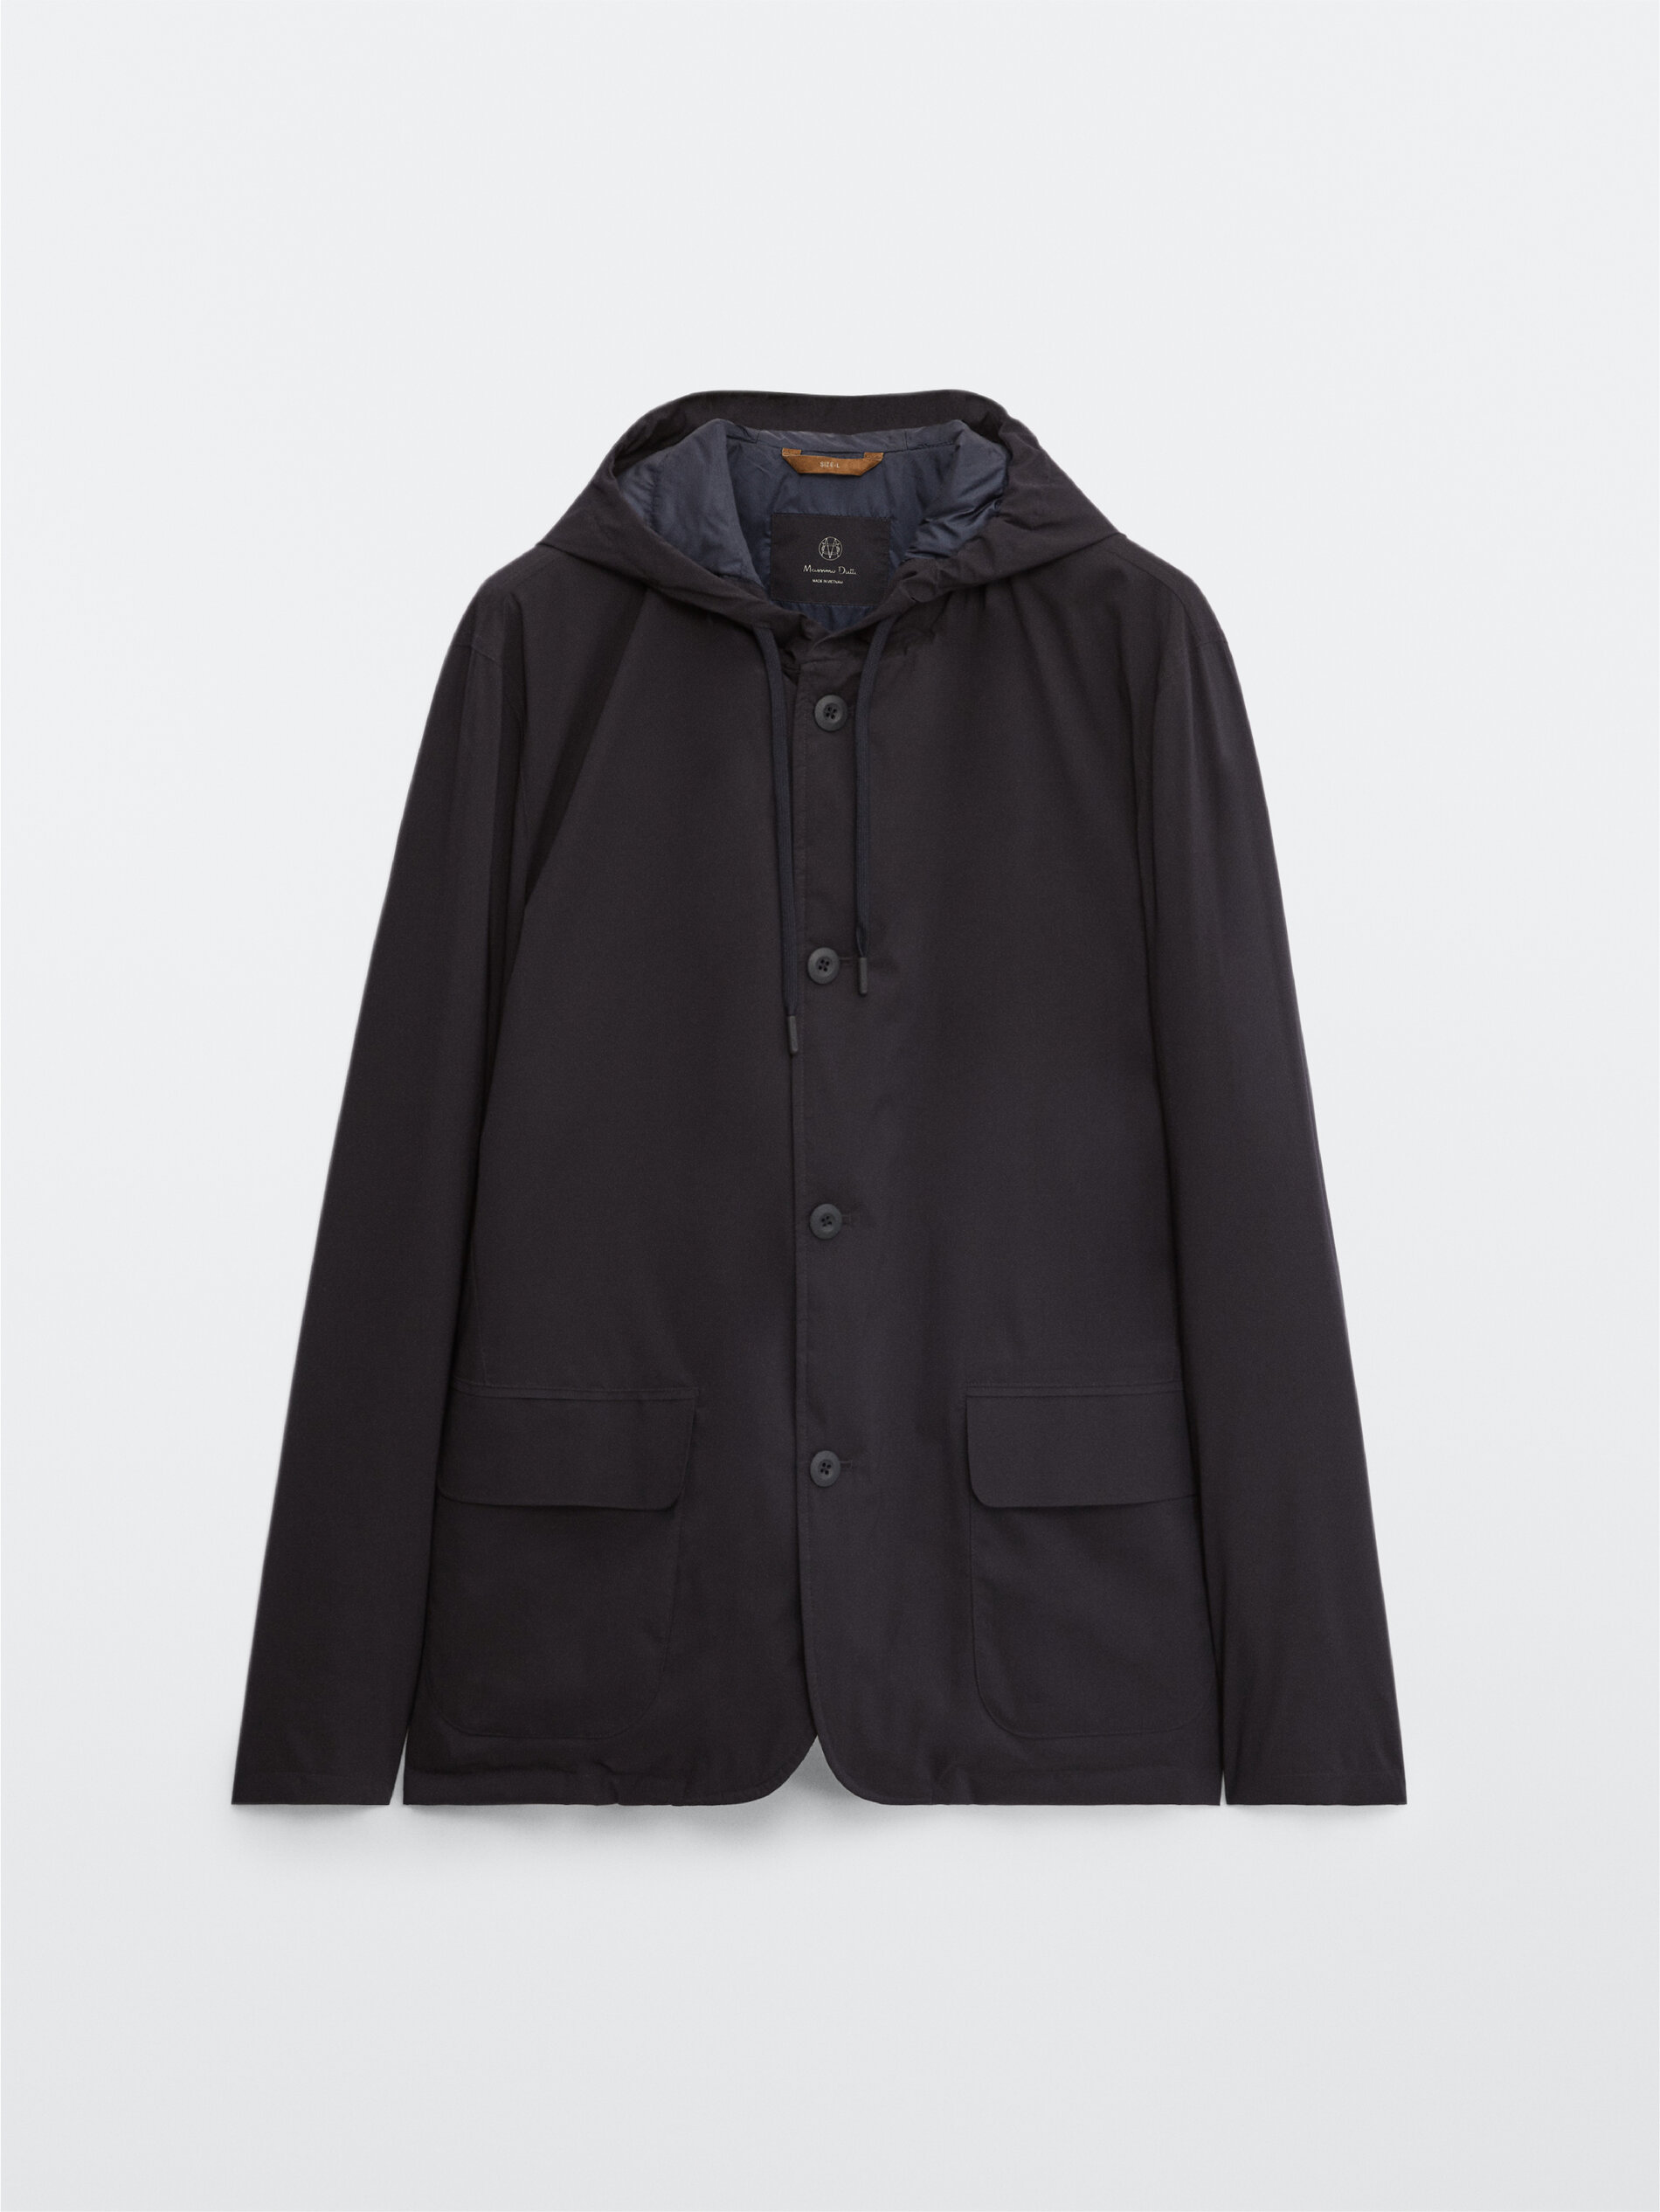 499710108599XL Micro Fleece Jacket Size XL In Cornflower Blue/Black 